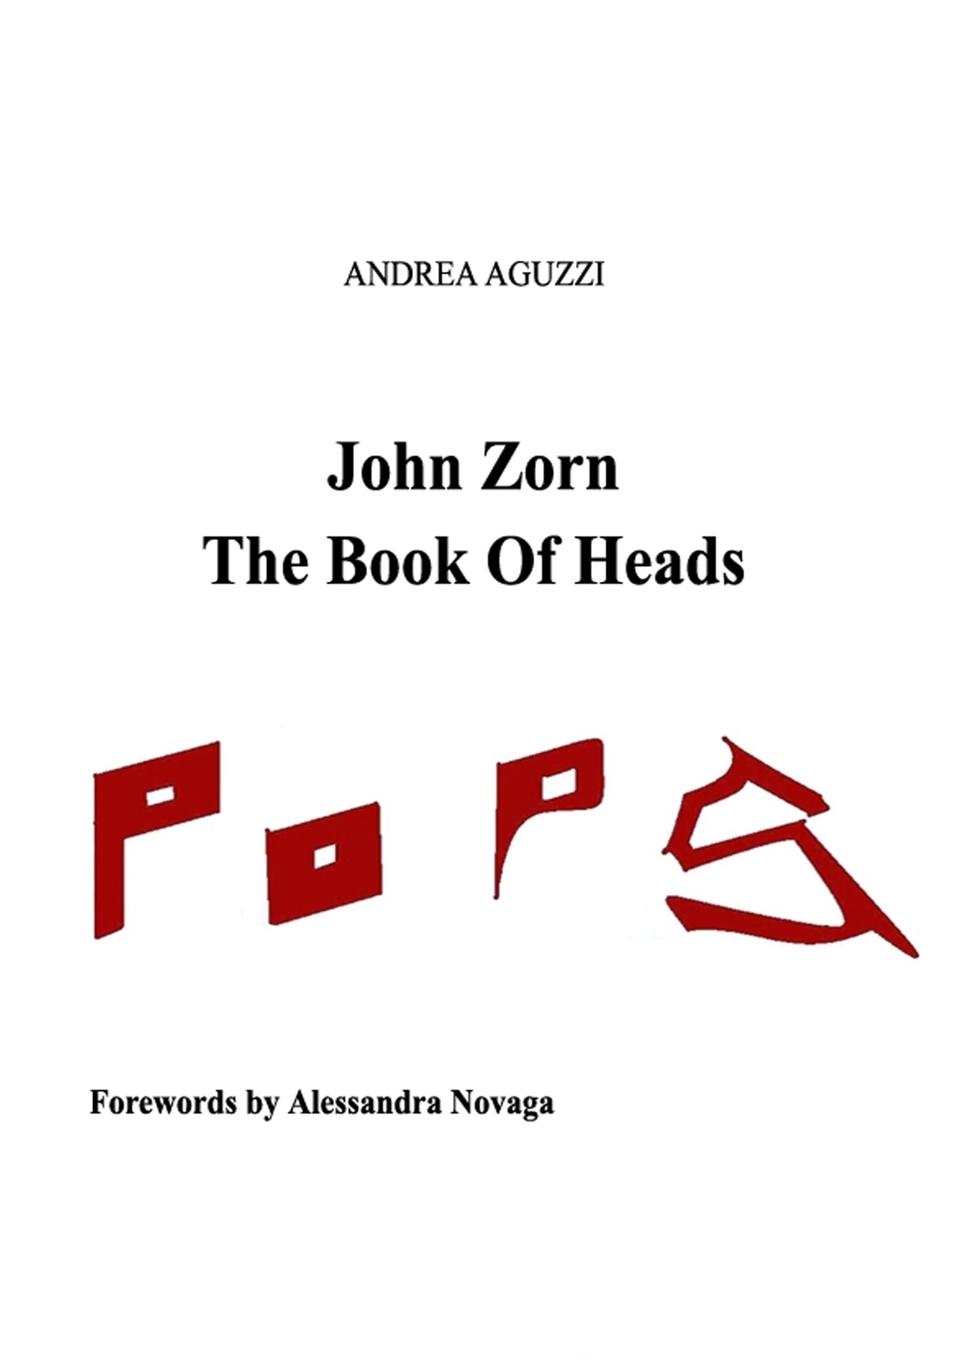 Carte John Zorn The Book Of Heads Andrea Aguzzi